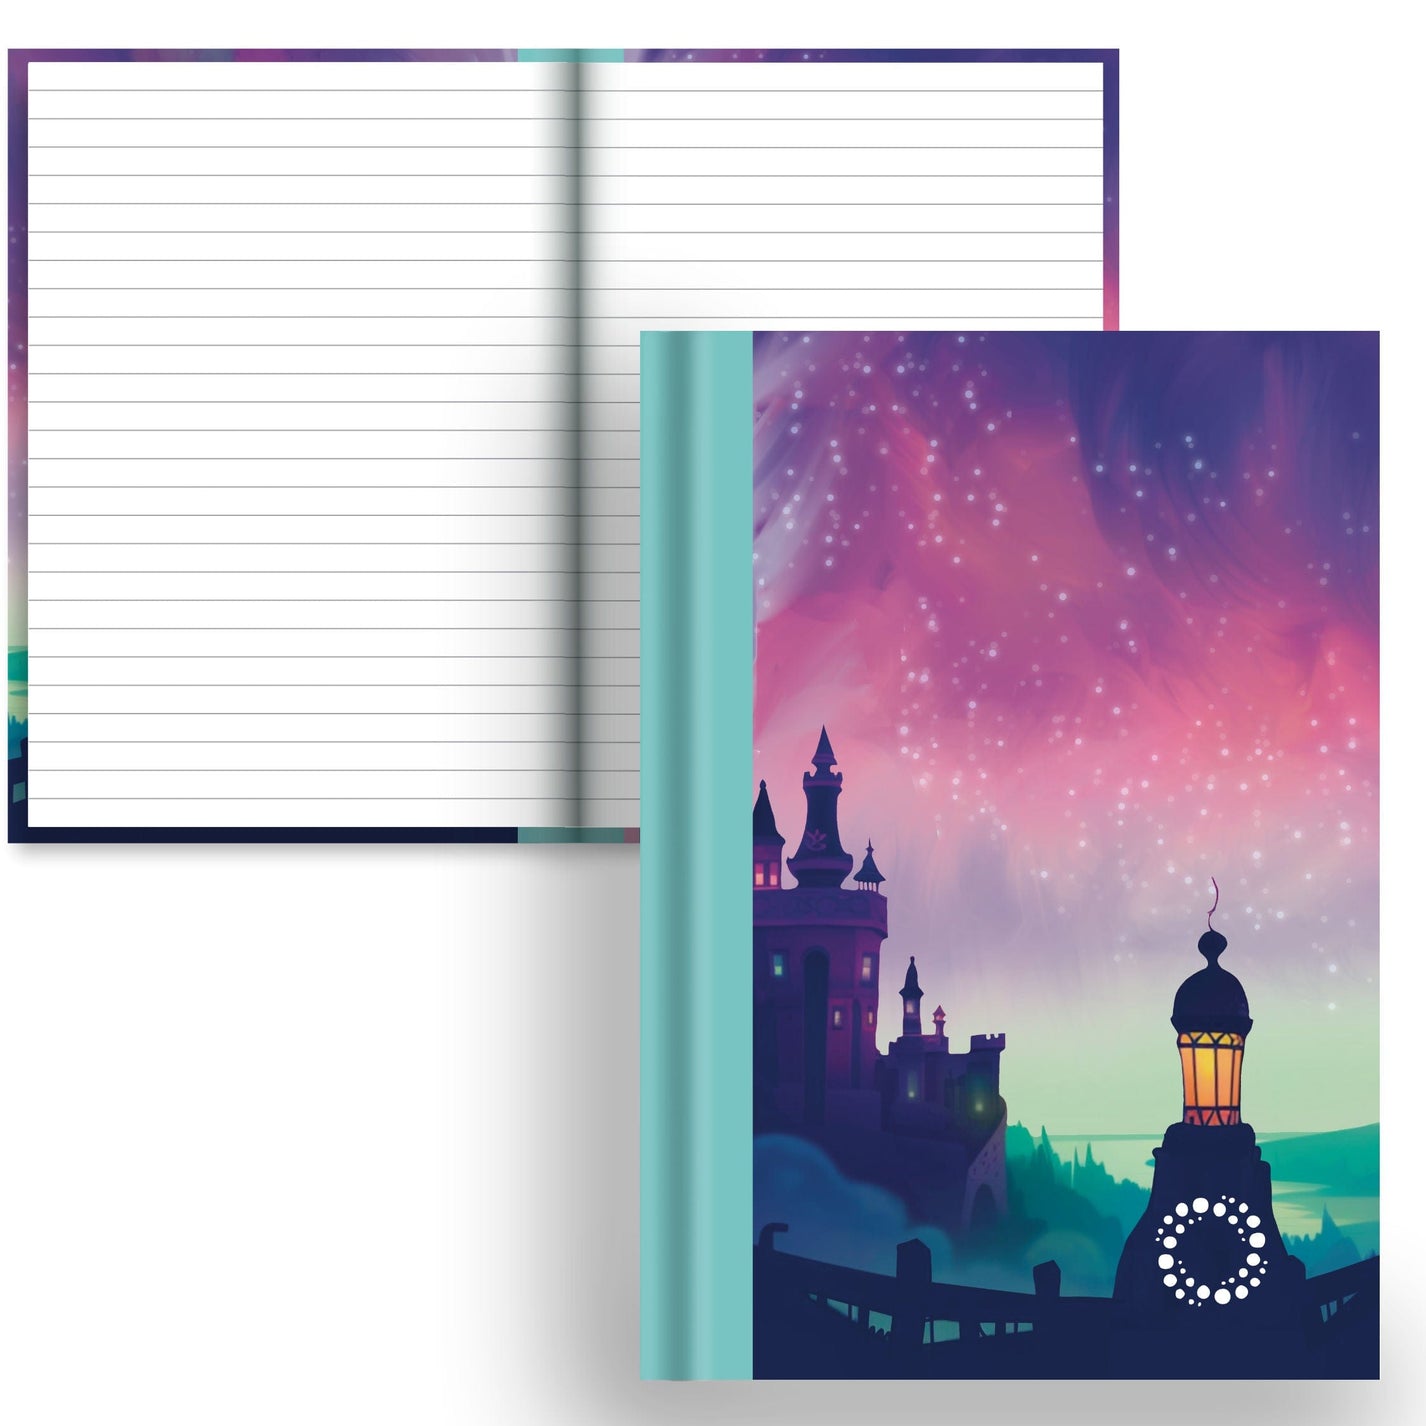 DayDot Journals A5 Notebook Lined Paper Fairytale - A5 Hardback Notebook